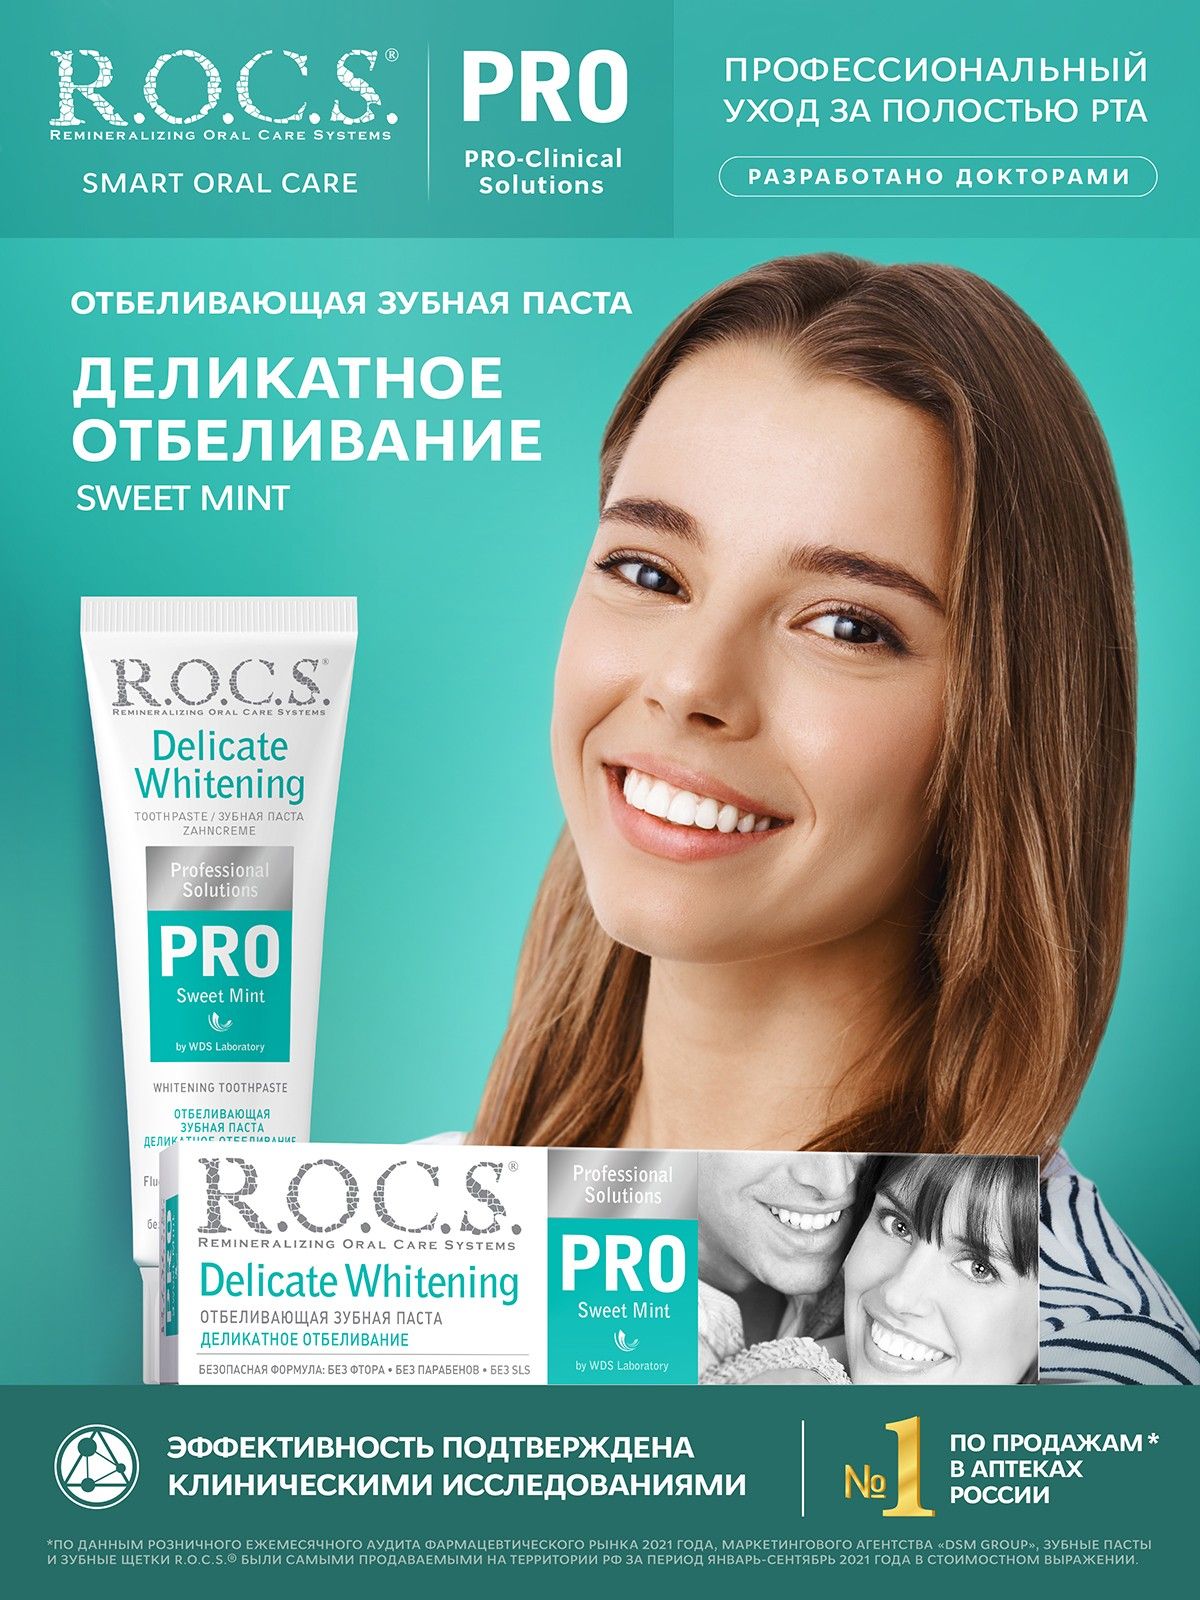 РОКС Зубная паста Деликатное Отбеливание - купить по цене производителя в Москве